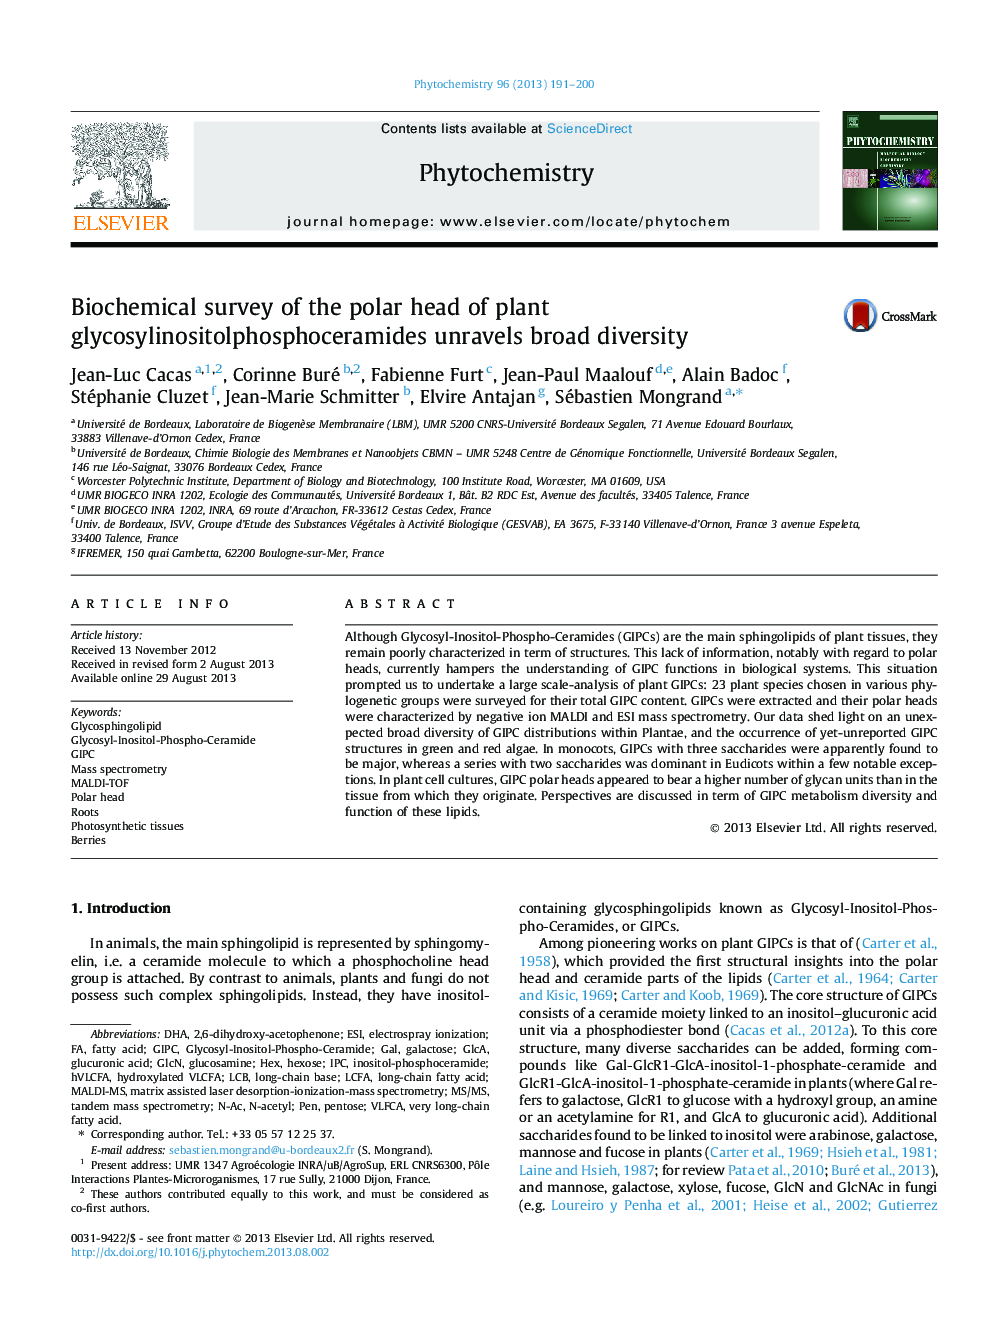 بررسی بیوشیمیایی سر قطبی گیاه گلیسوزیلینوسیتولف فسفوکراتامیدز، تنوع گسترده ای را در بر می گیرد 